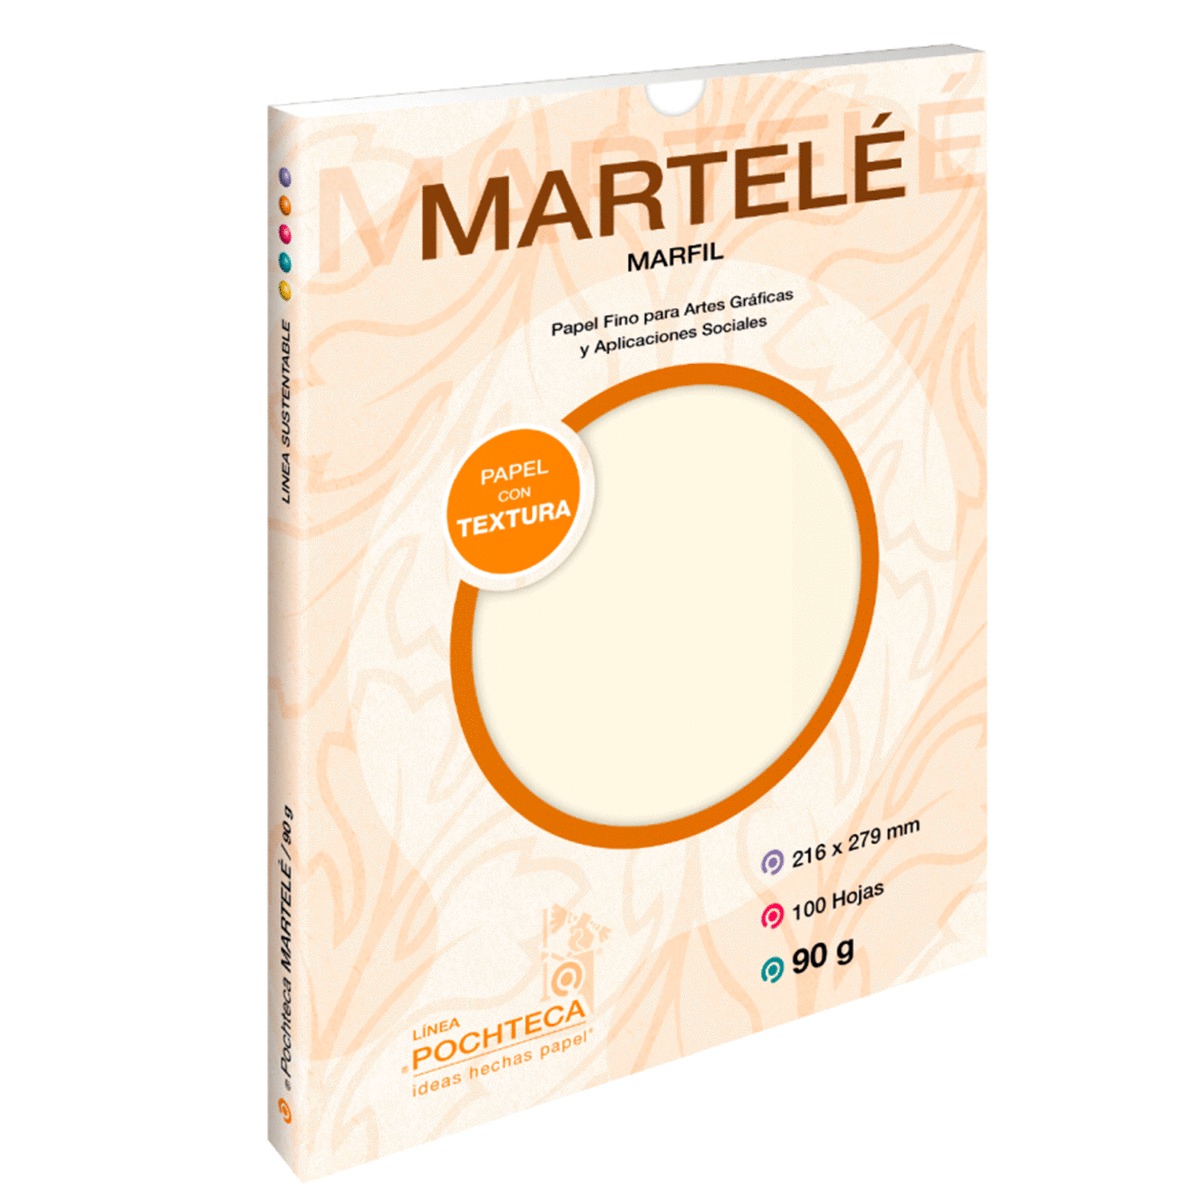 Papel Texturizado Pochteca Martelé / 100 hojas / Carta / Marfil / 90 gr